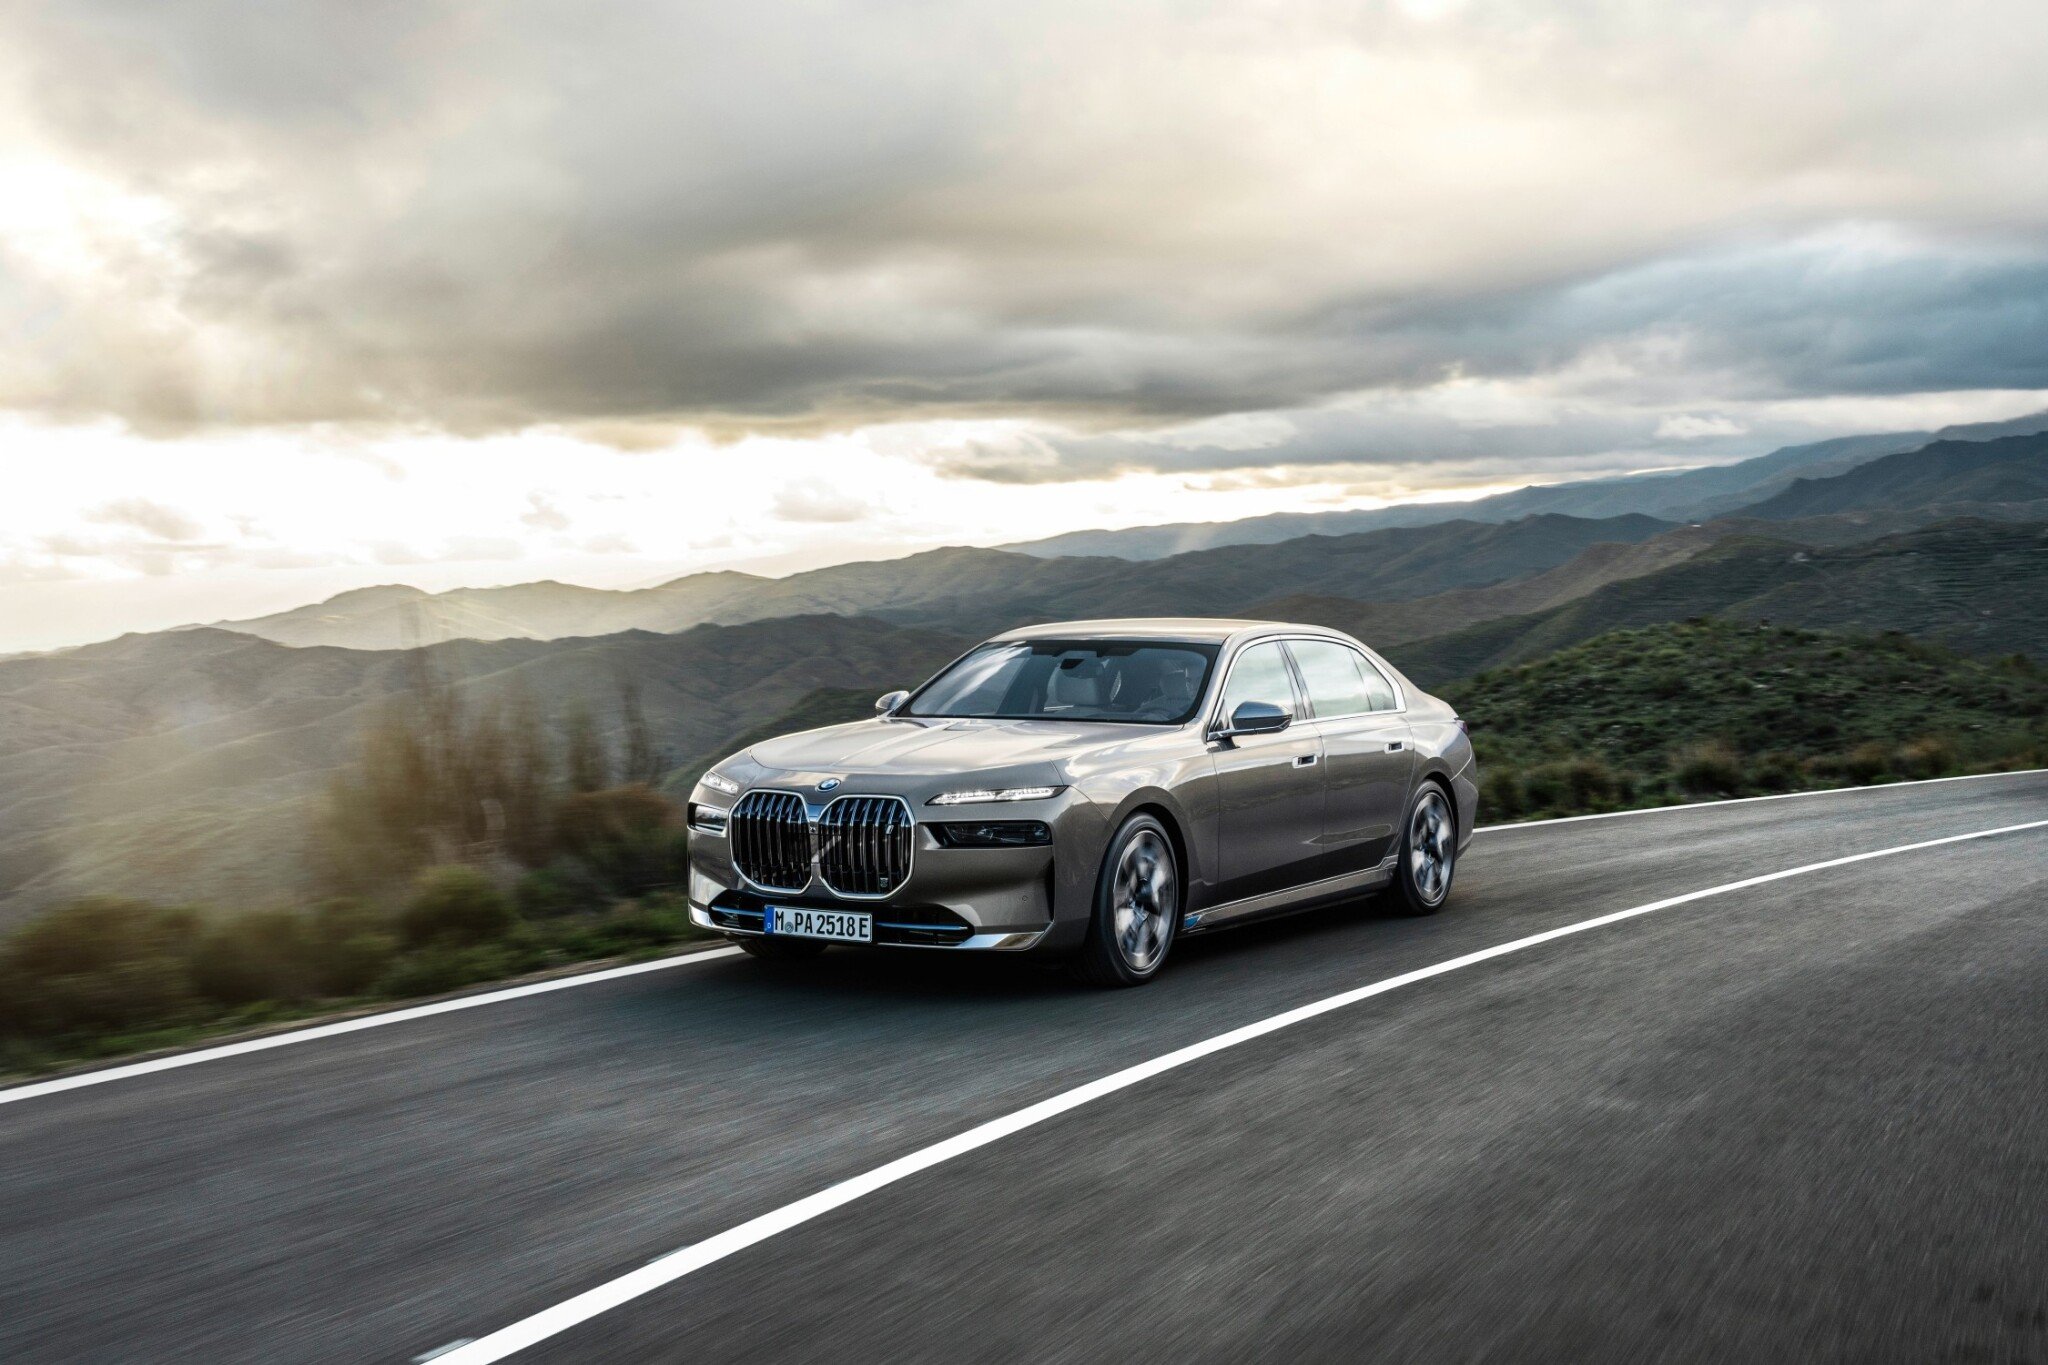 BMW letos očekává nárůst odbytu. Zajistit ho mají elektromobily a luxusní vozy